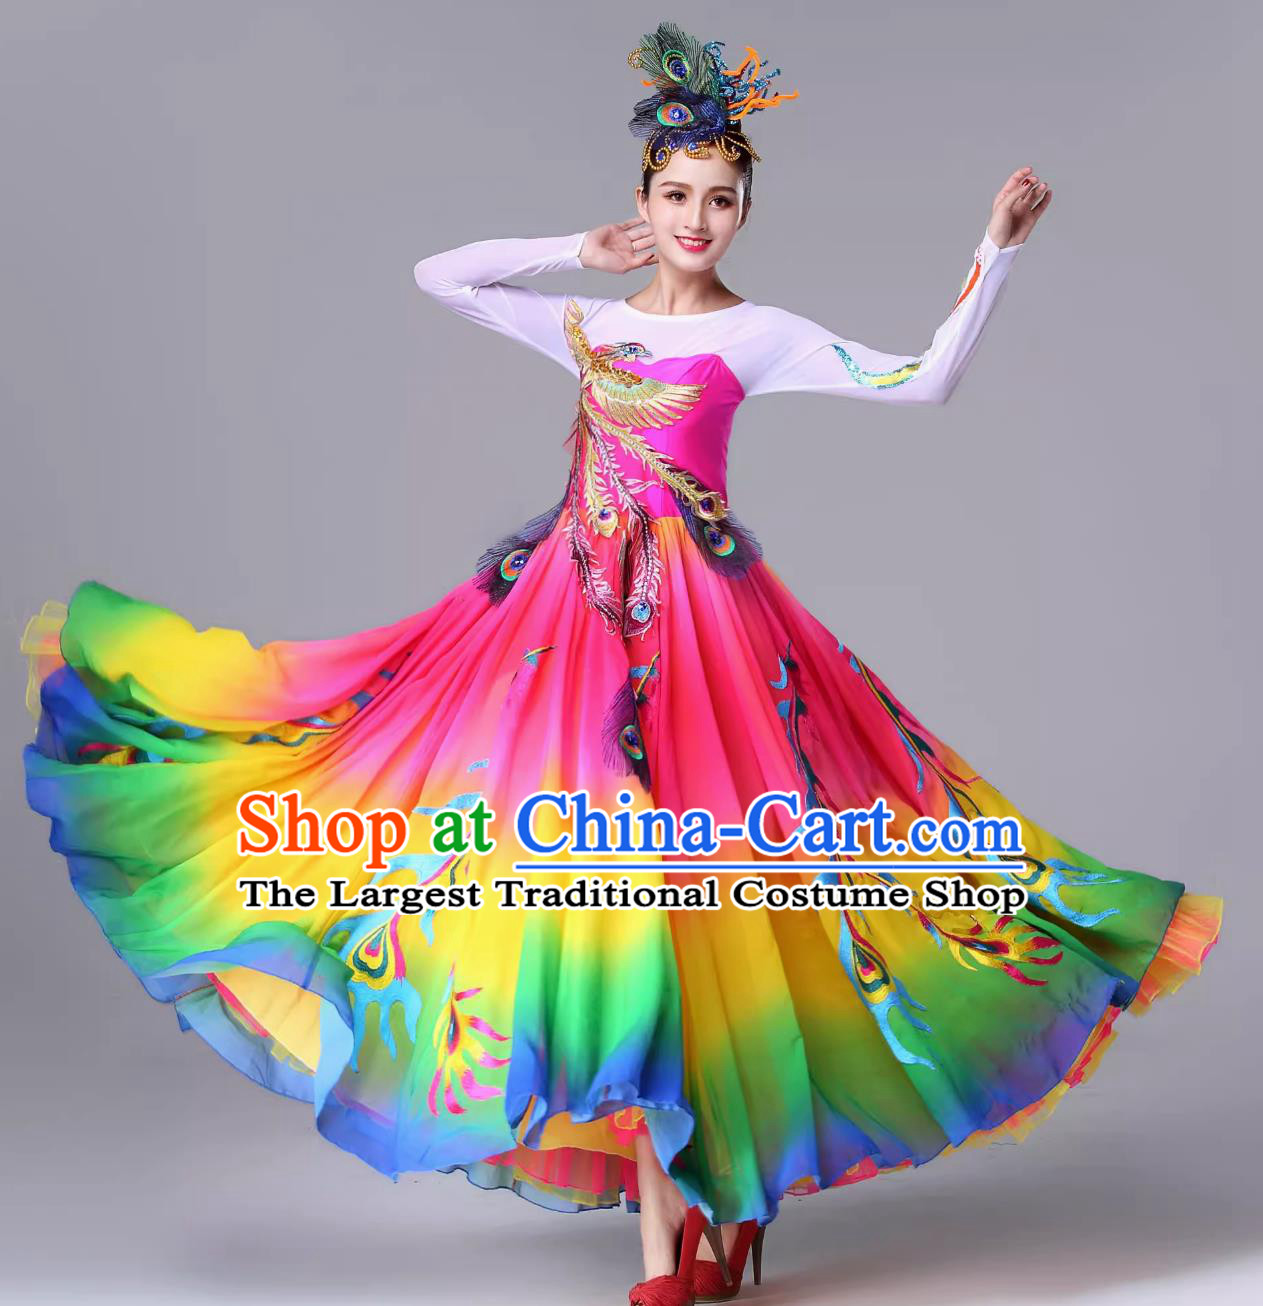 Top Opening Dance Costume Fengwei Square Dance Clothing China Female Fan Dance Dress Modern Dance Fashion